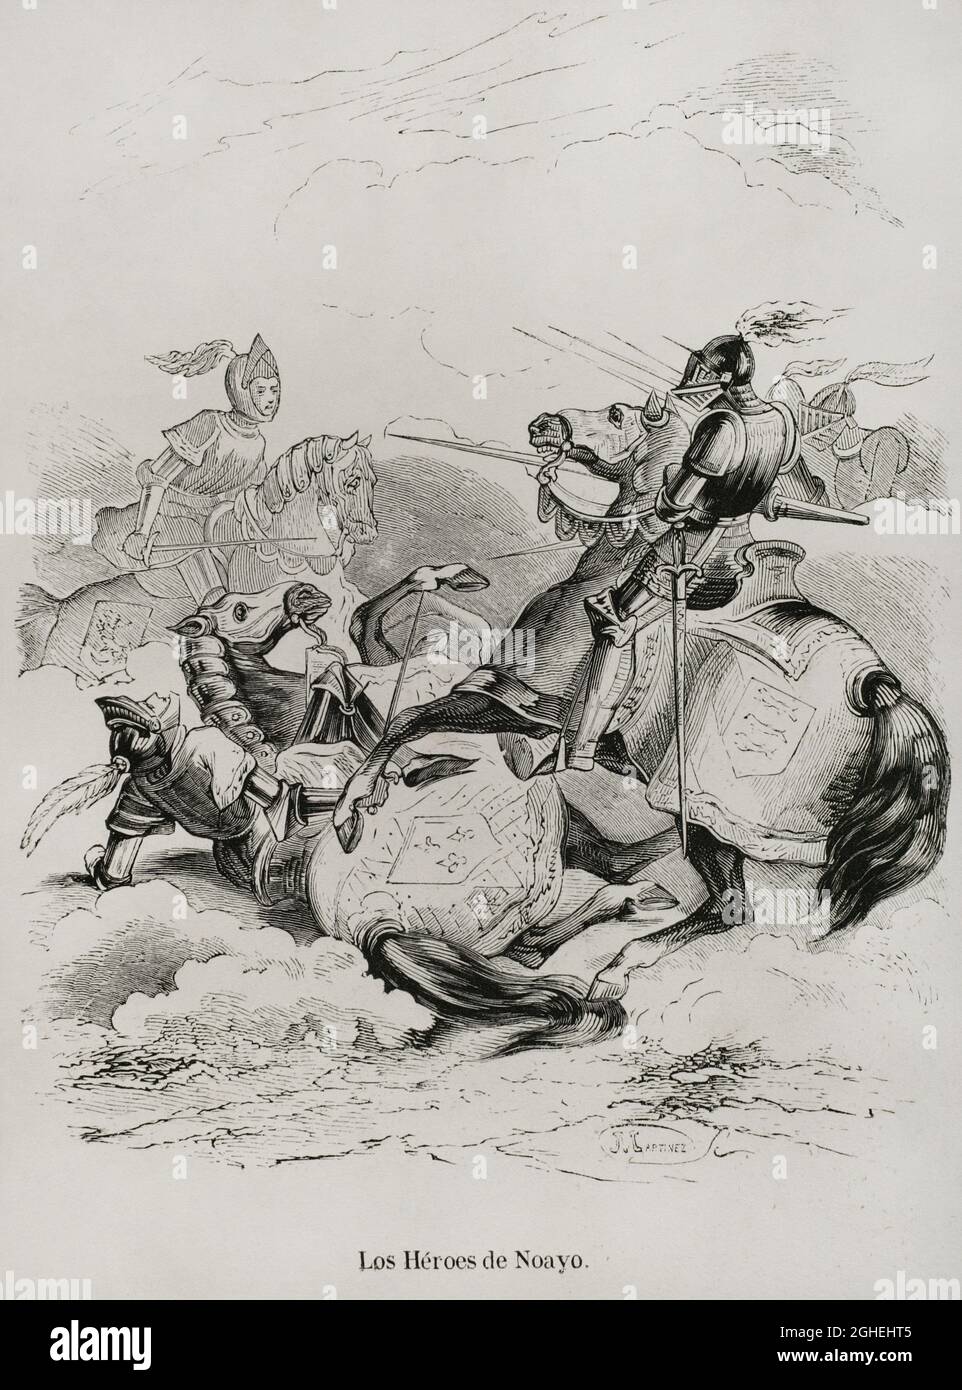 Geschichte Spaniens. Die Helden von Noayo. Gravur. Las Glorias Nacionales. Band III, Ausgabe Madrid-Barcelona, 1853. Stockfoto